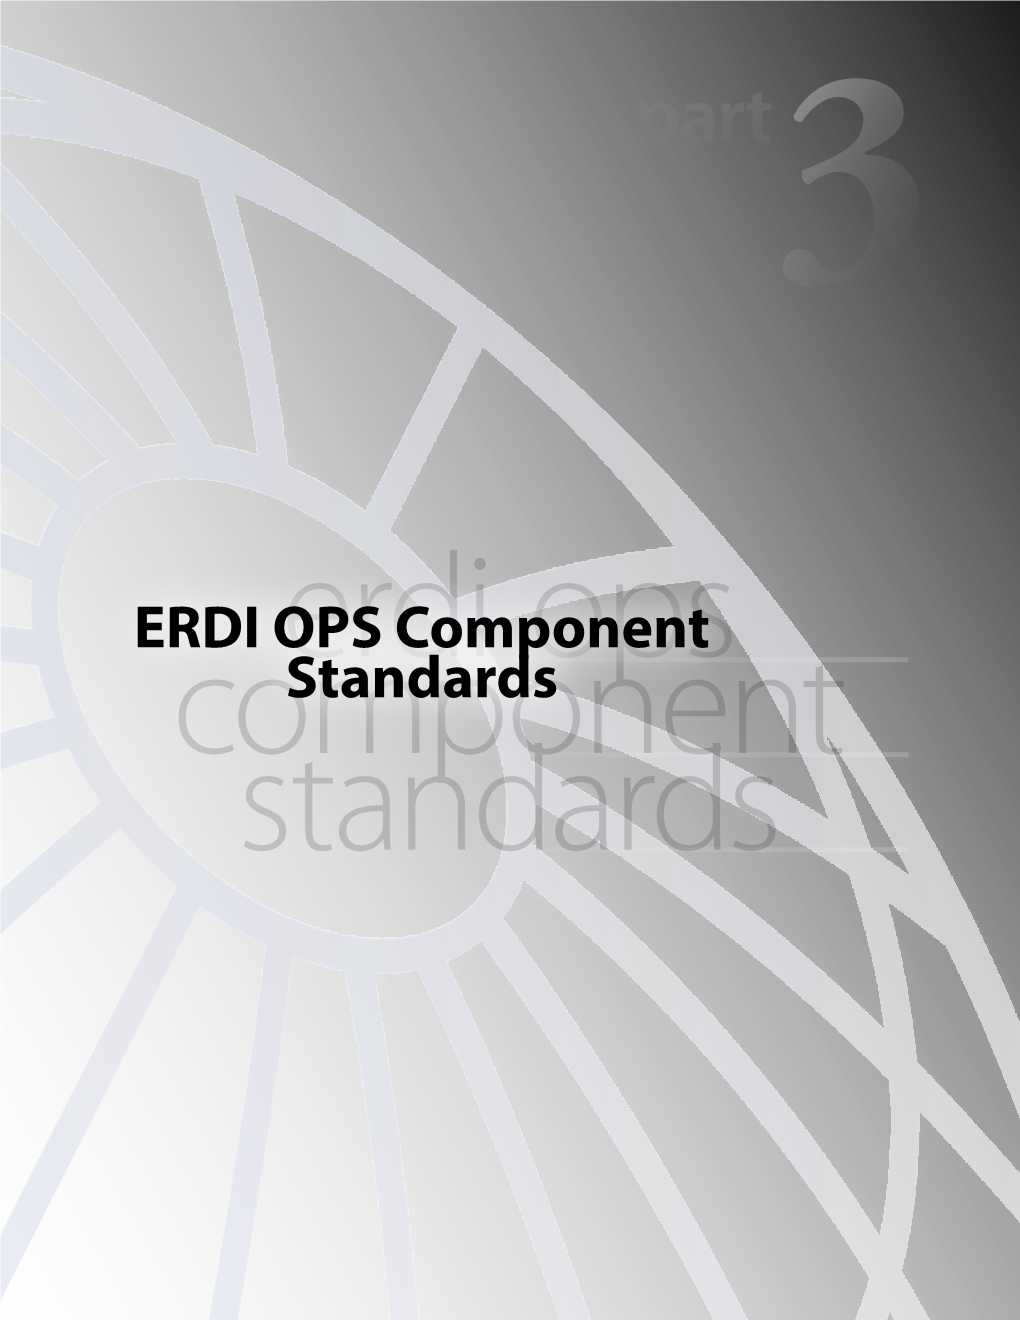 ERDI OPS Component Standards